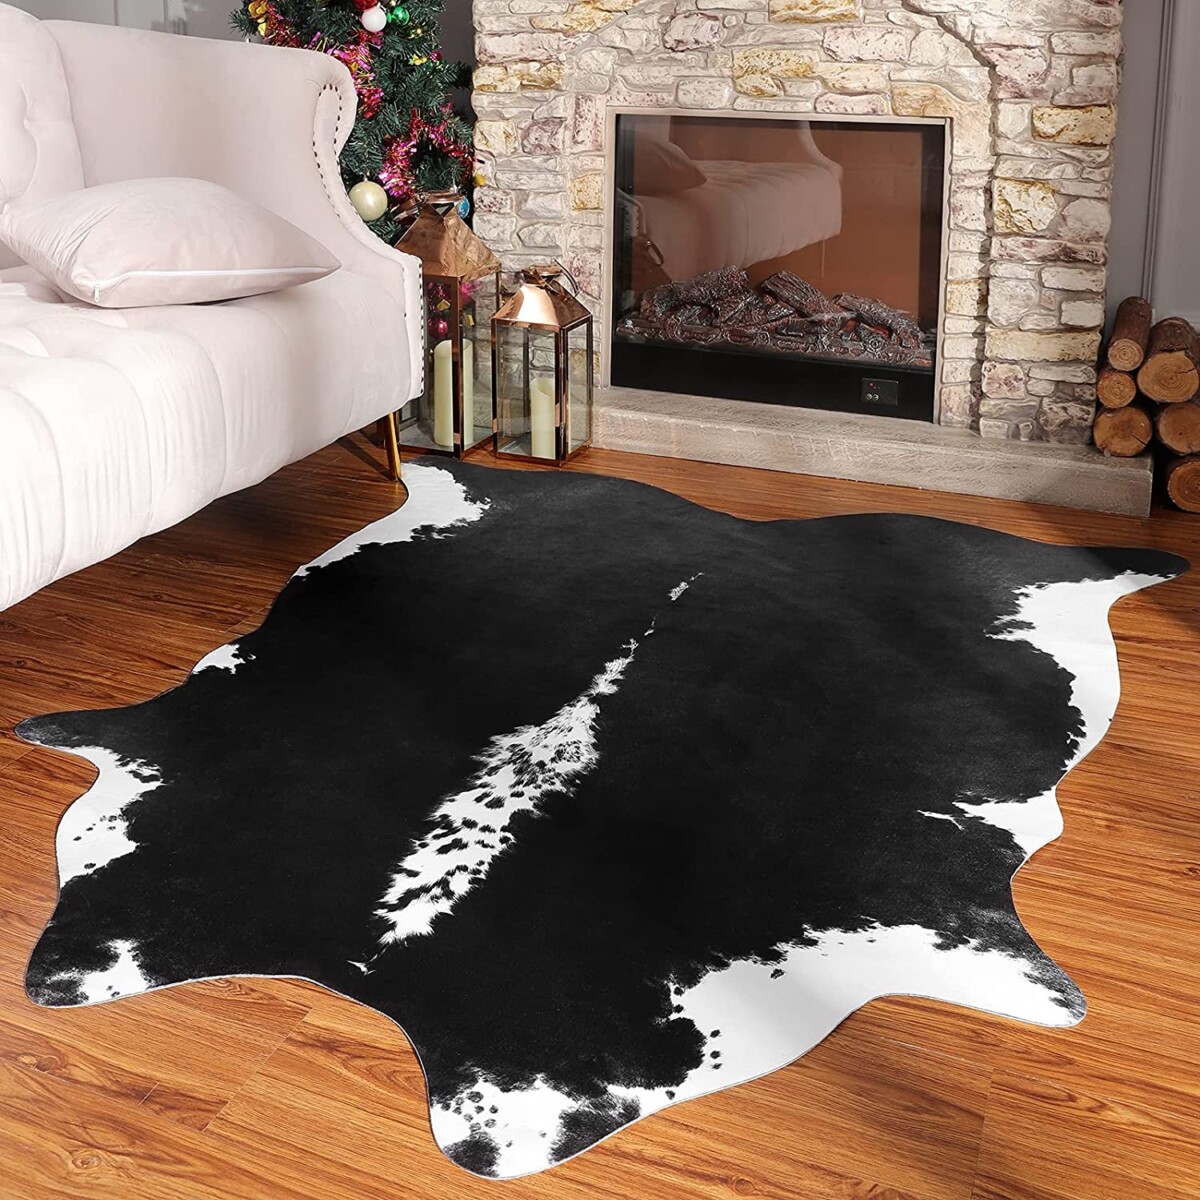 Cómo limpiar una alfombra de piel de vaca - Consejos información útil sobre